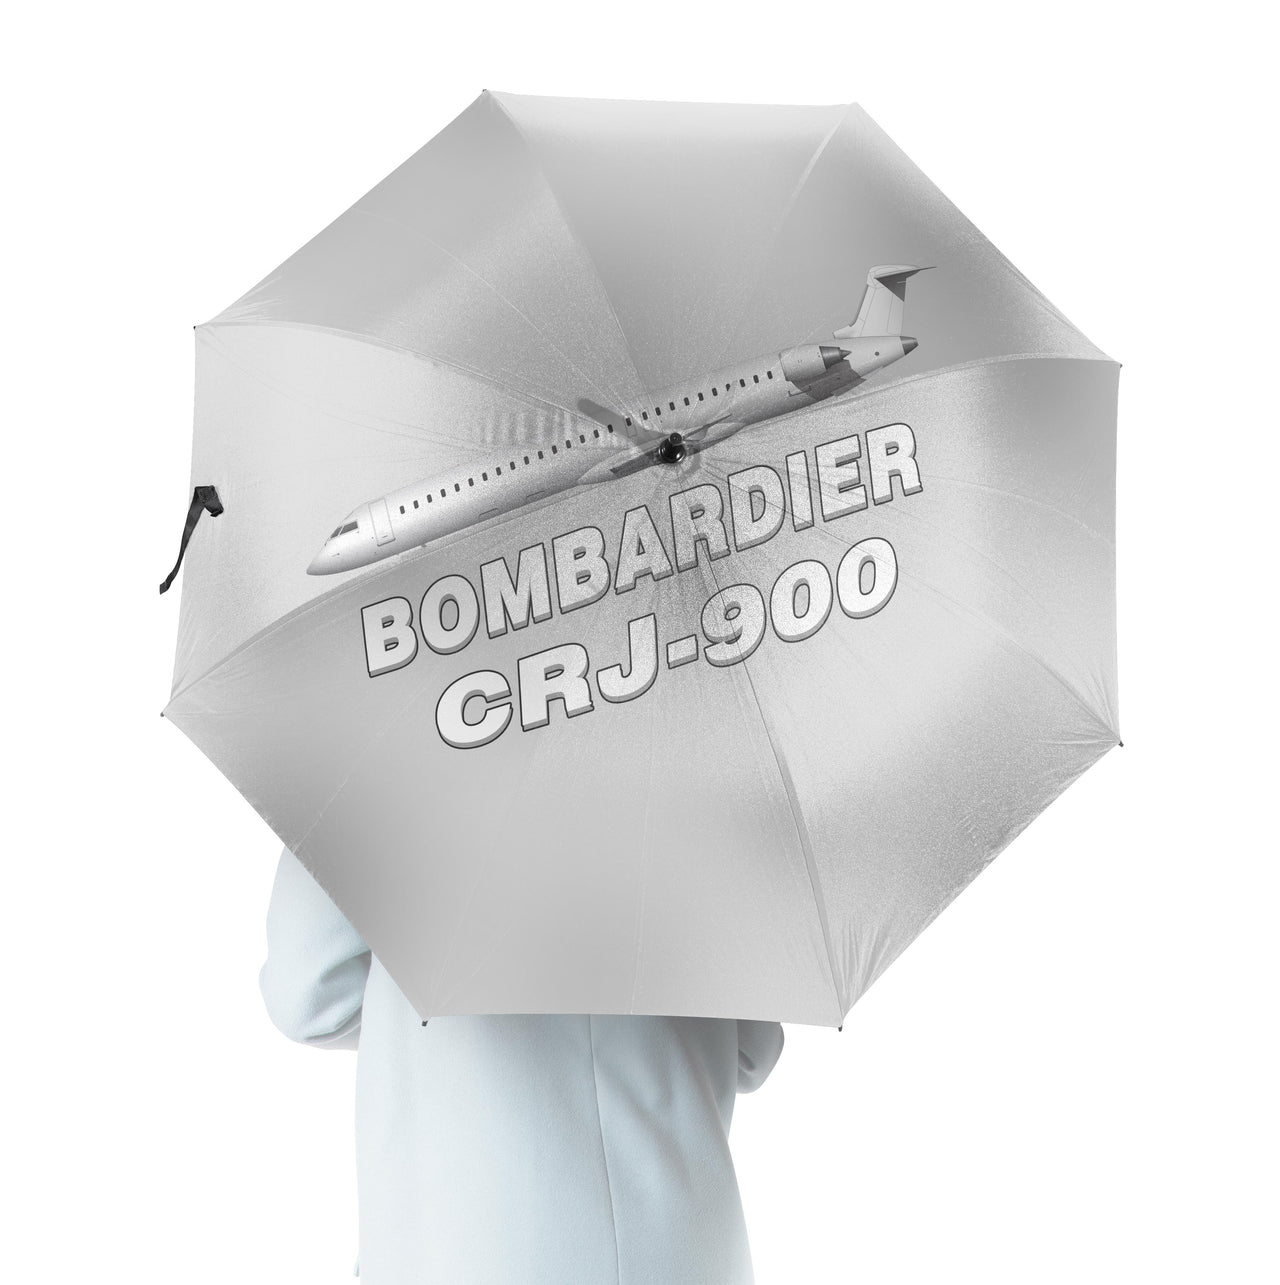 Bombardier CRJ-900 Designed Umbrella